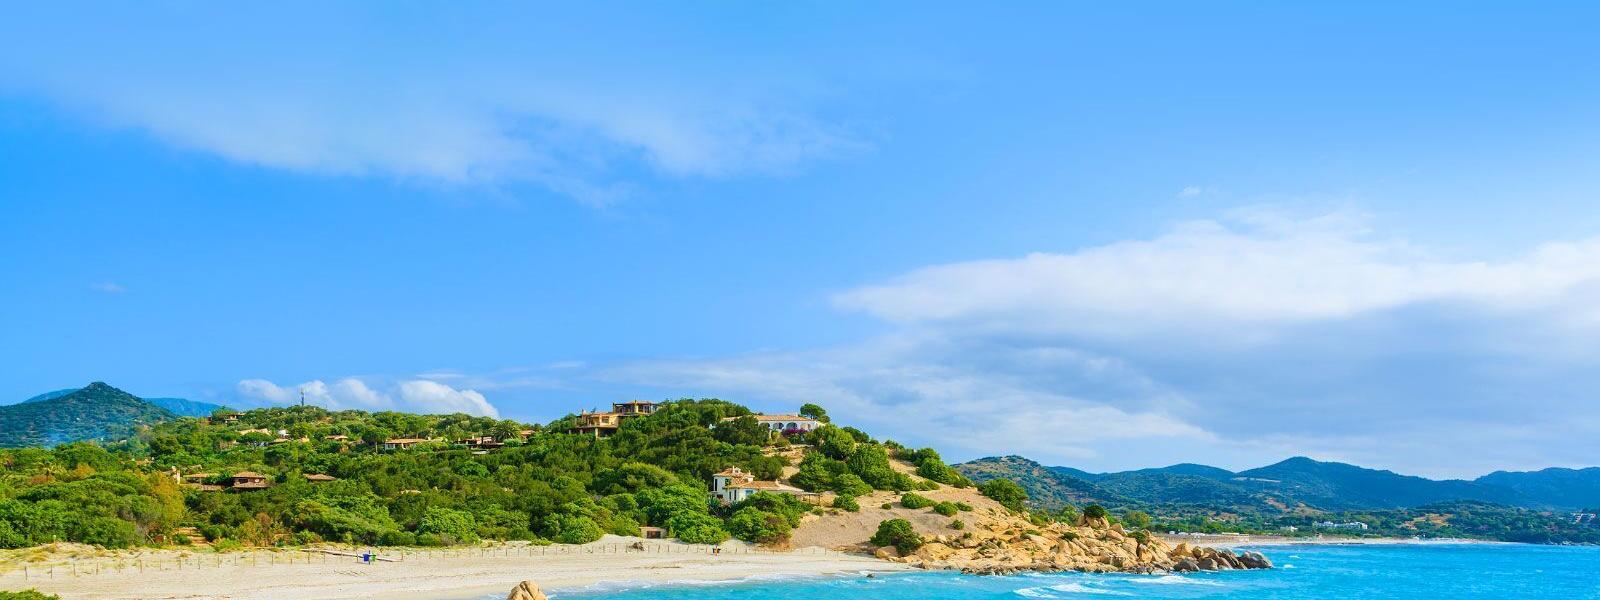 Ferienwohnungen und Ferienhäuser auf Sardinien - atraveo